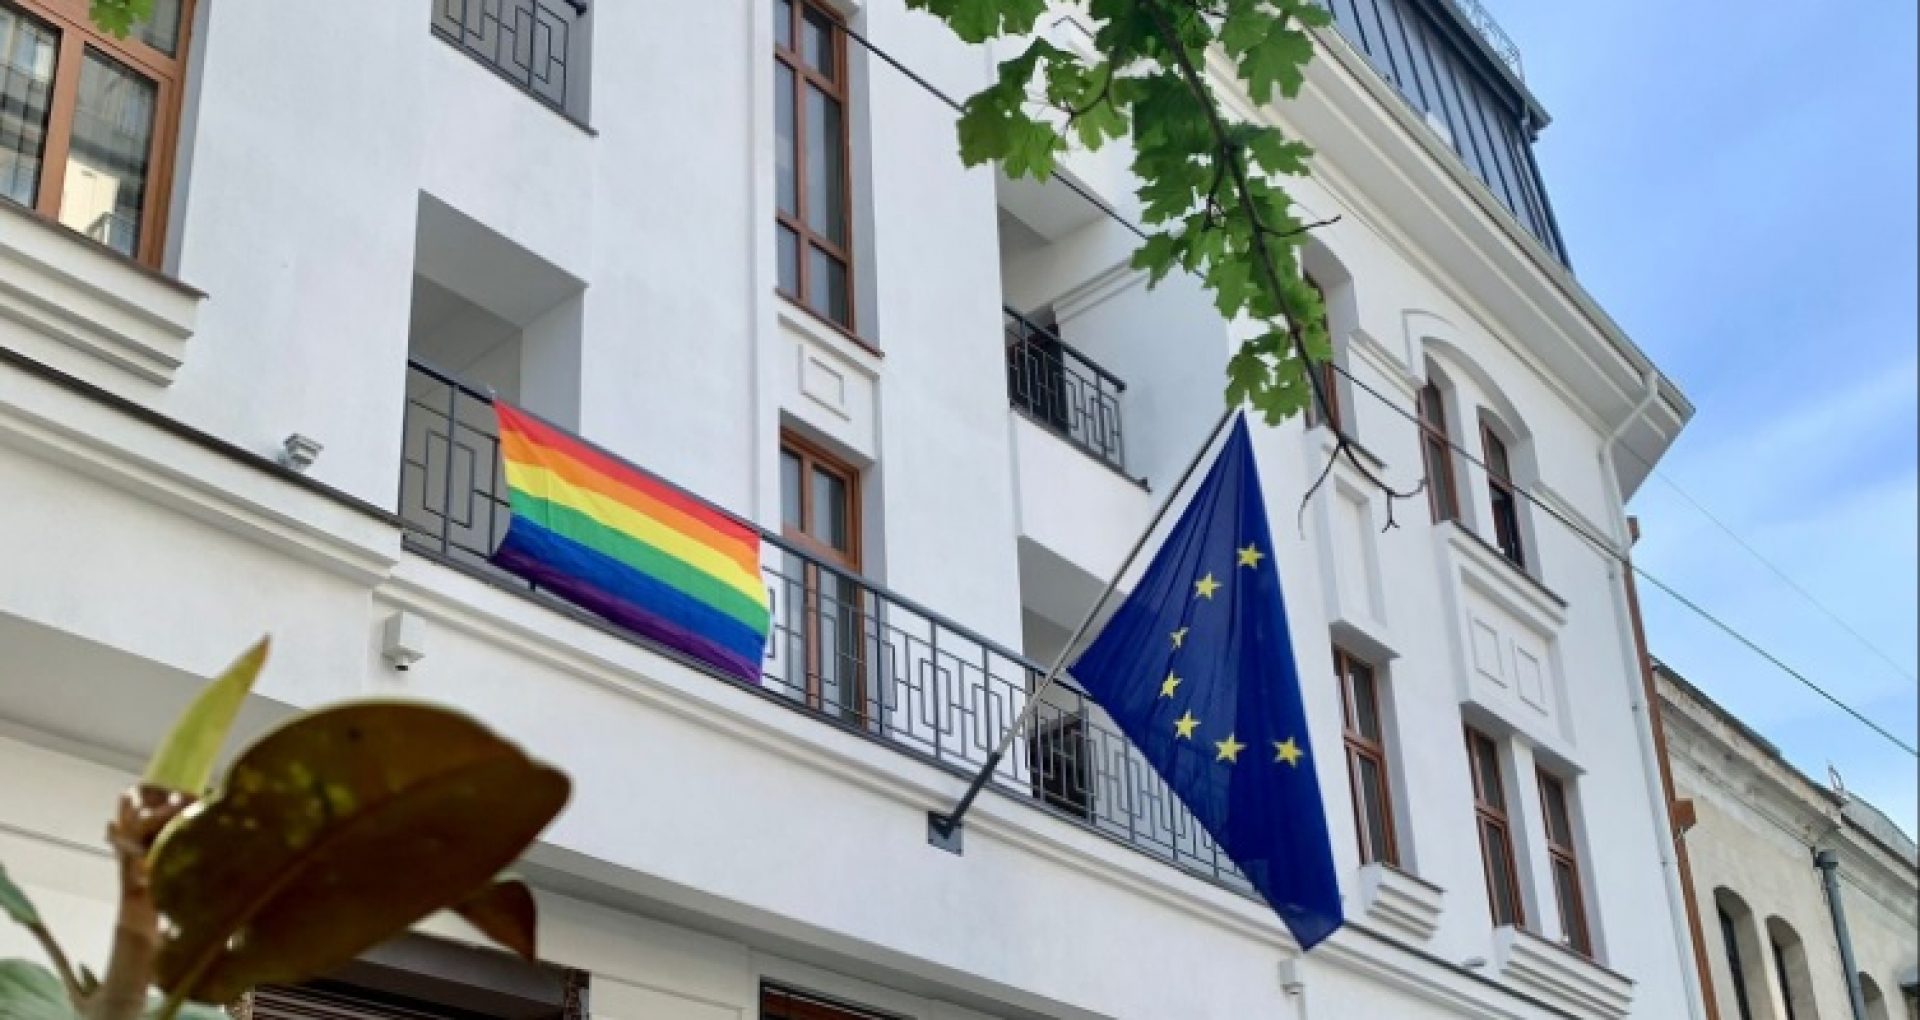 Peste 30 de misiuni diplomatice acreditate în R. Moldova au emis o declarație comună de Ziua internaţională împotriva homofobiei, bifobiei şi transfobiei